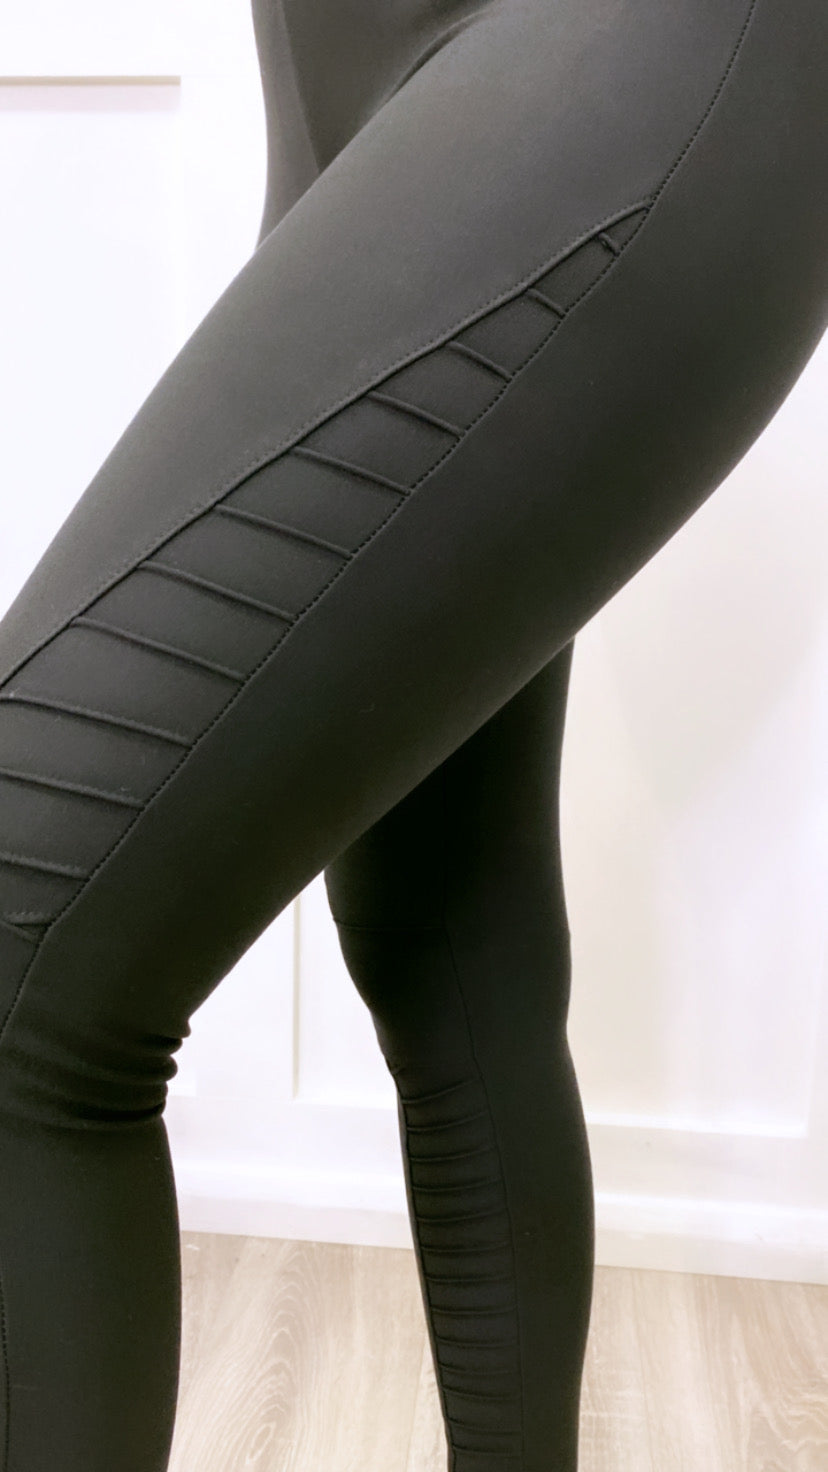 Black Spandex Leggings That Look Like Jeans